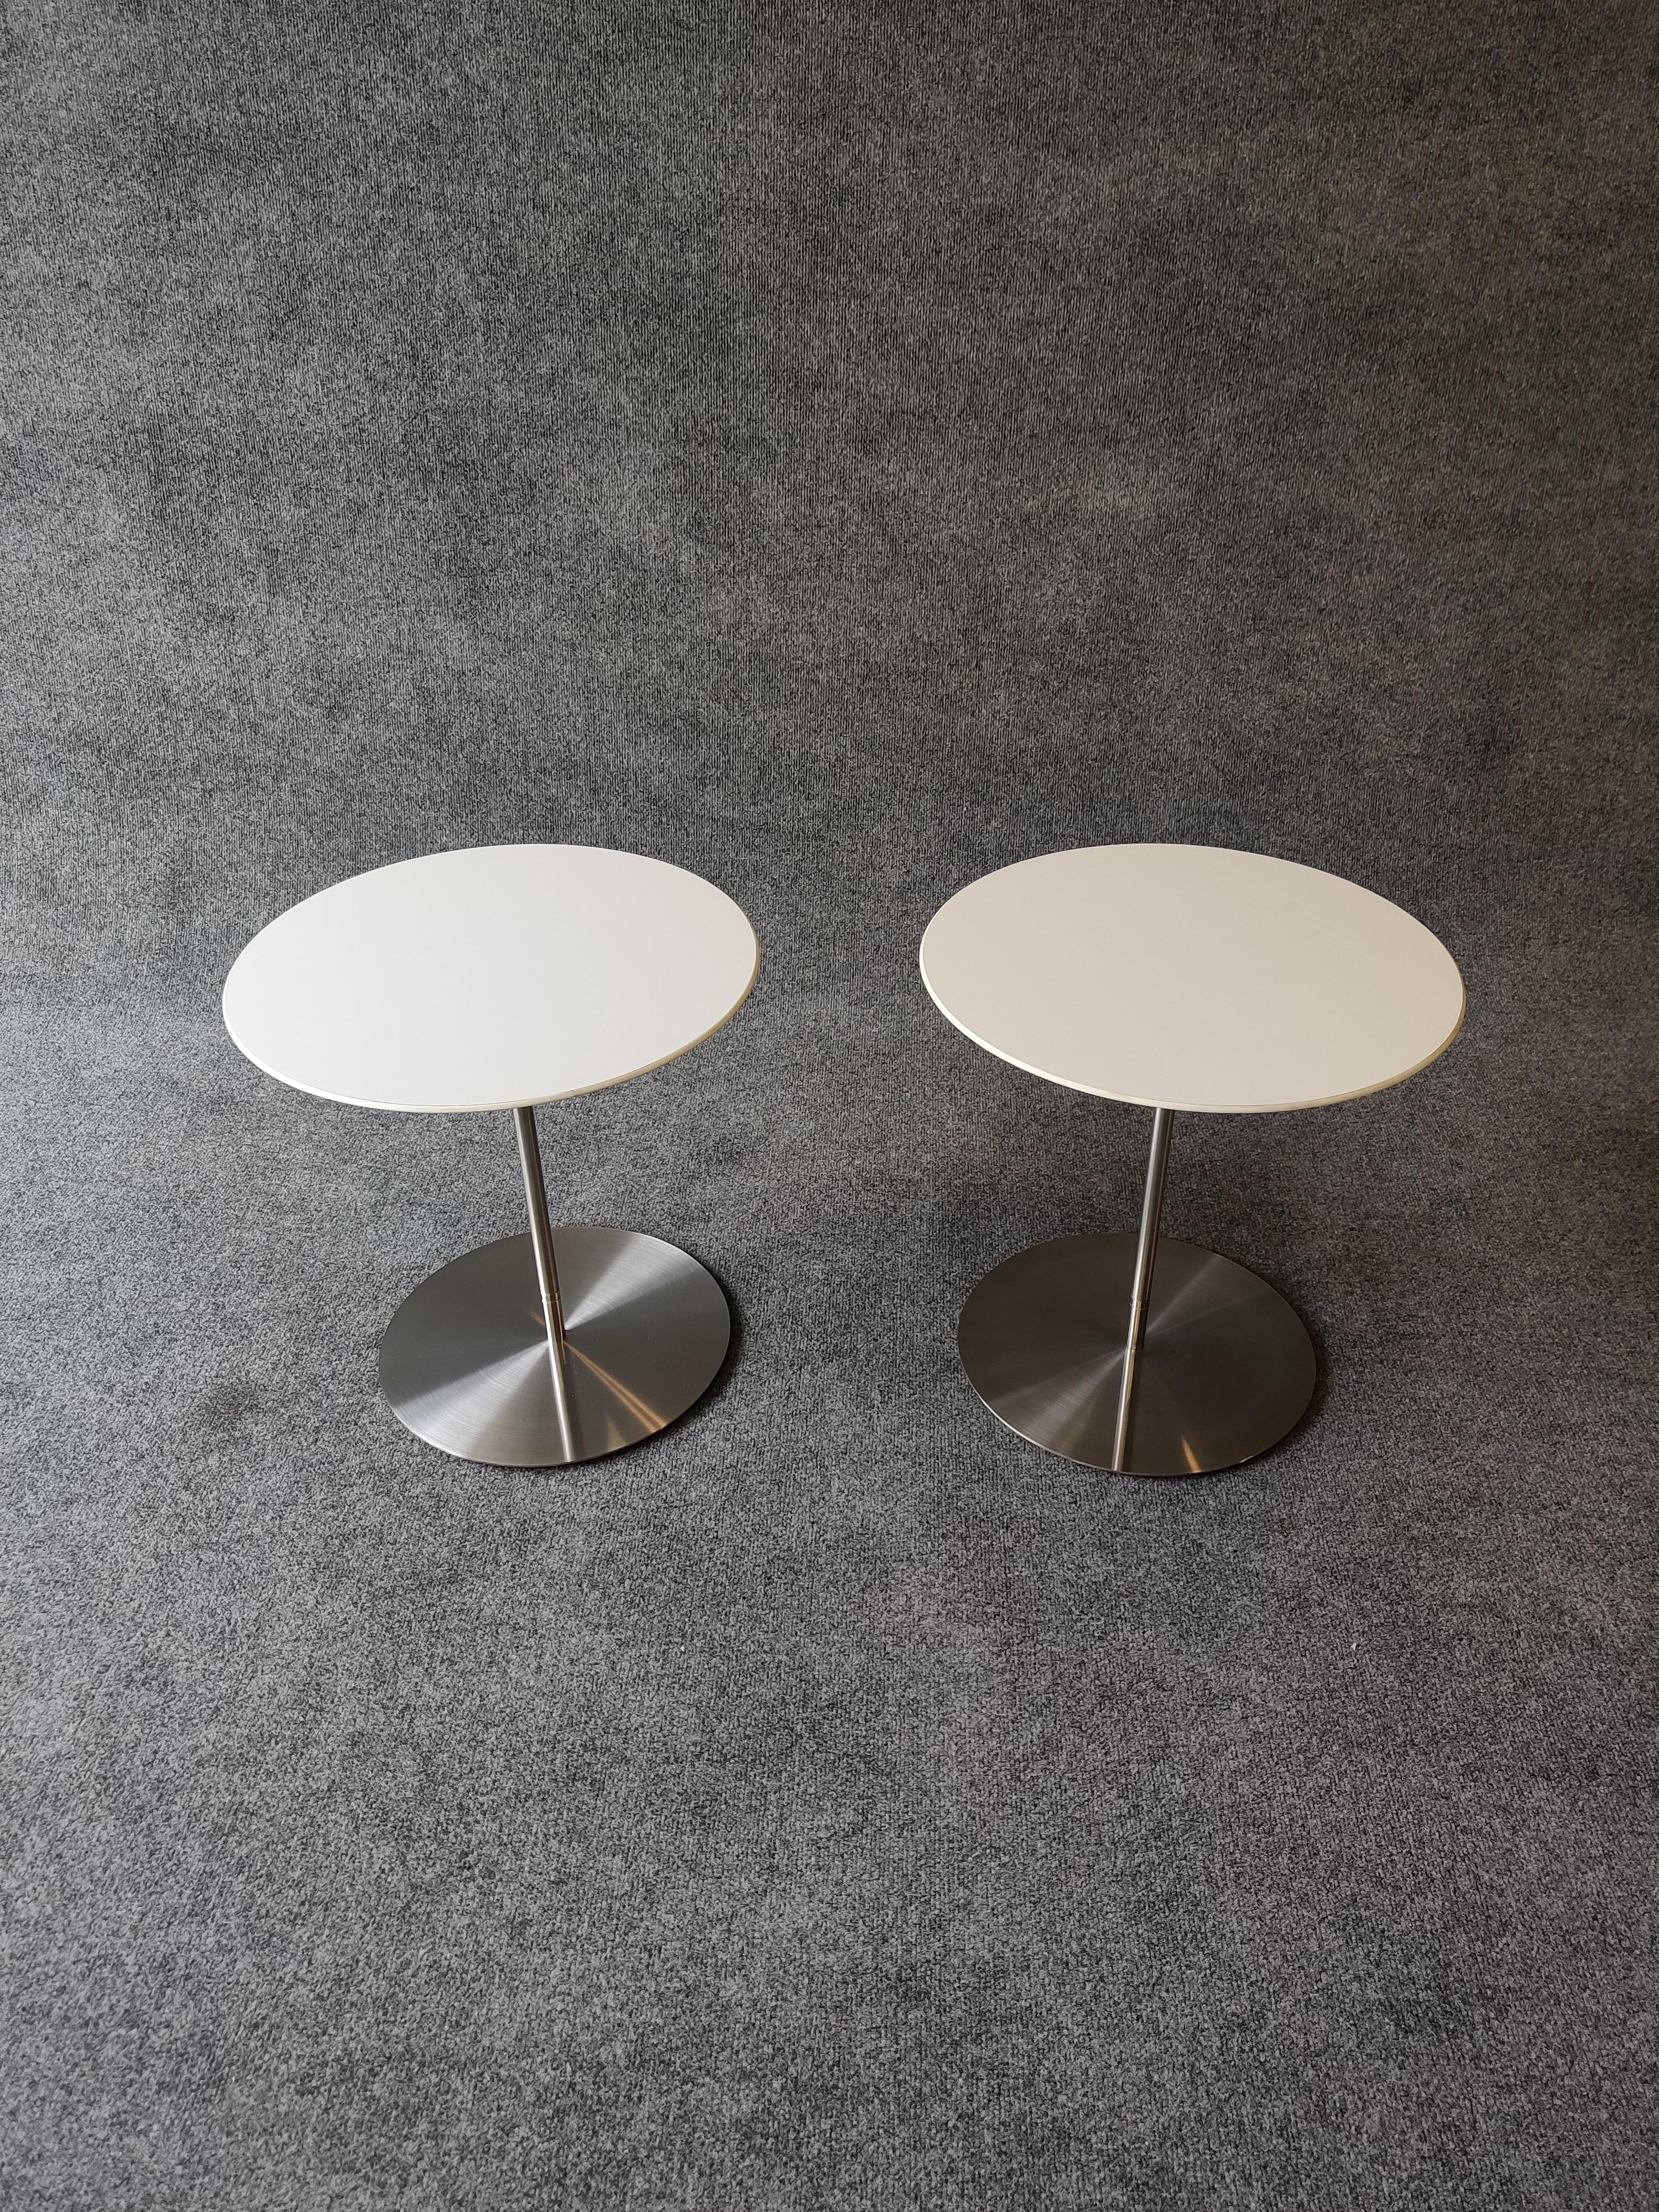 Paire de meubles d'appoint ou d'appoint conçus par Bernhardt Robb et fabriqués par Design/One. En stratifié blanc sur des bases en acier inoxydable. Des détails simples et subtils rendent ces tables merveilleusement pratiques. 

À propos de